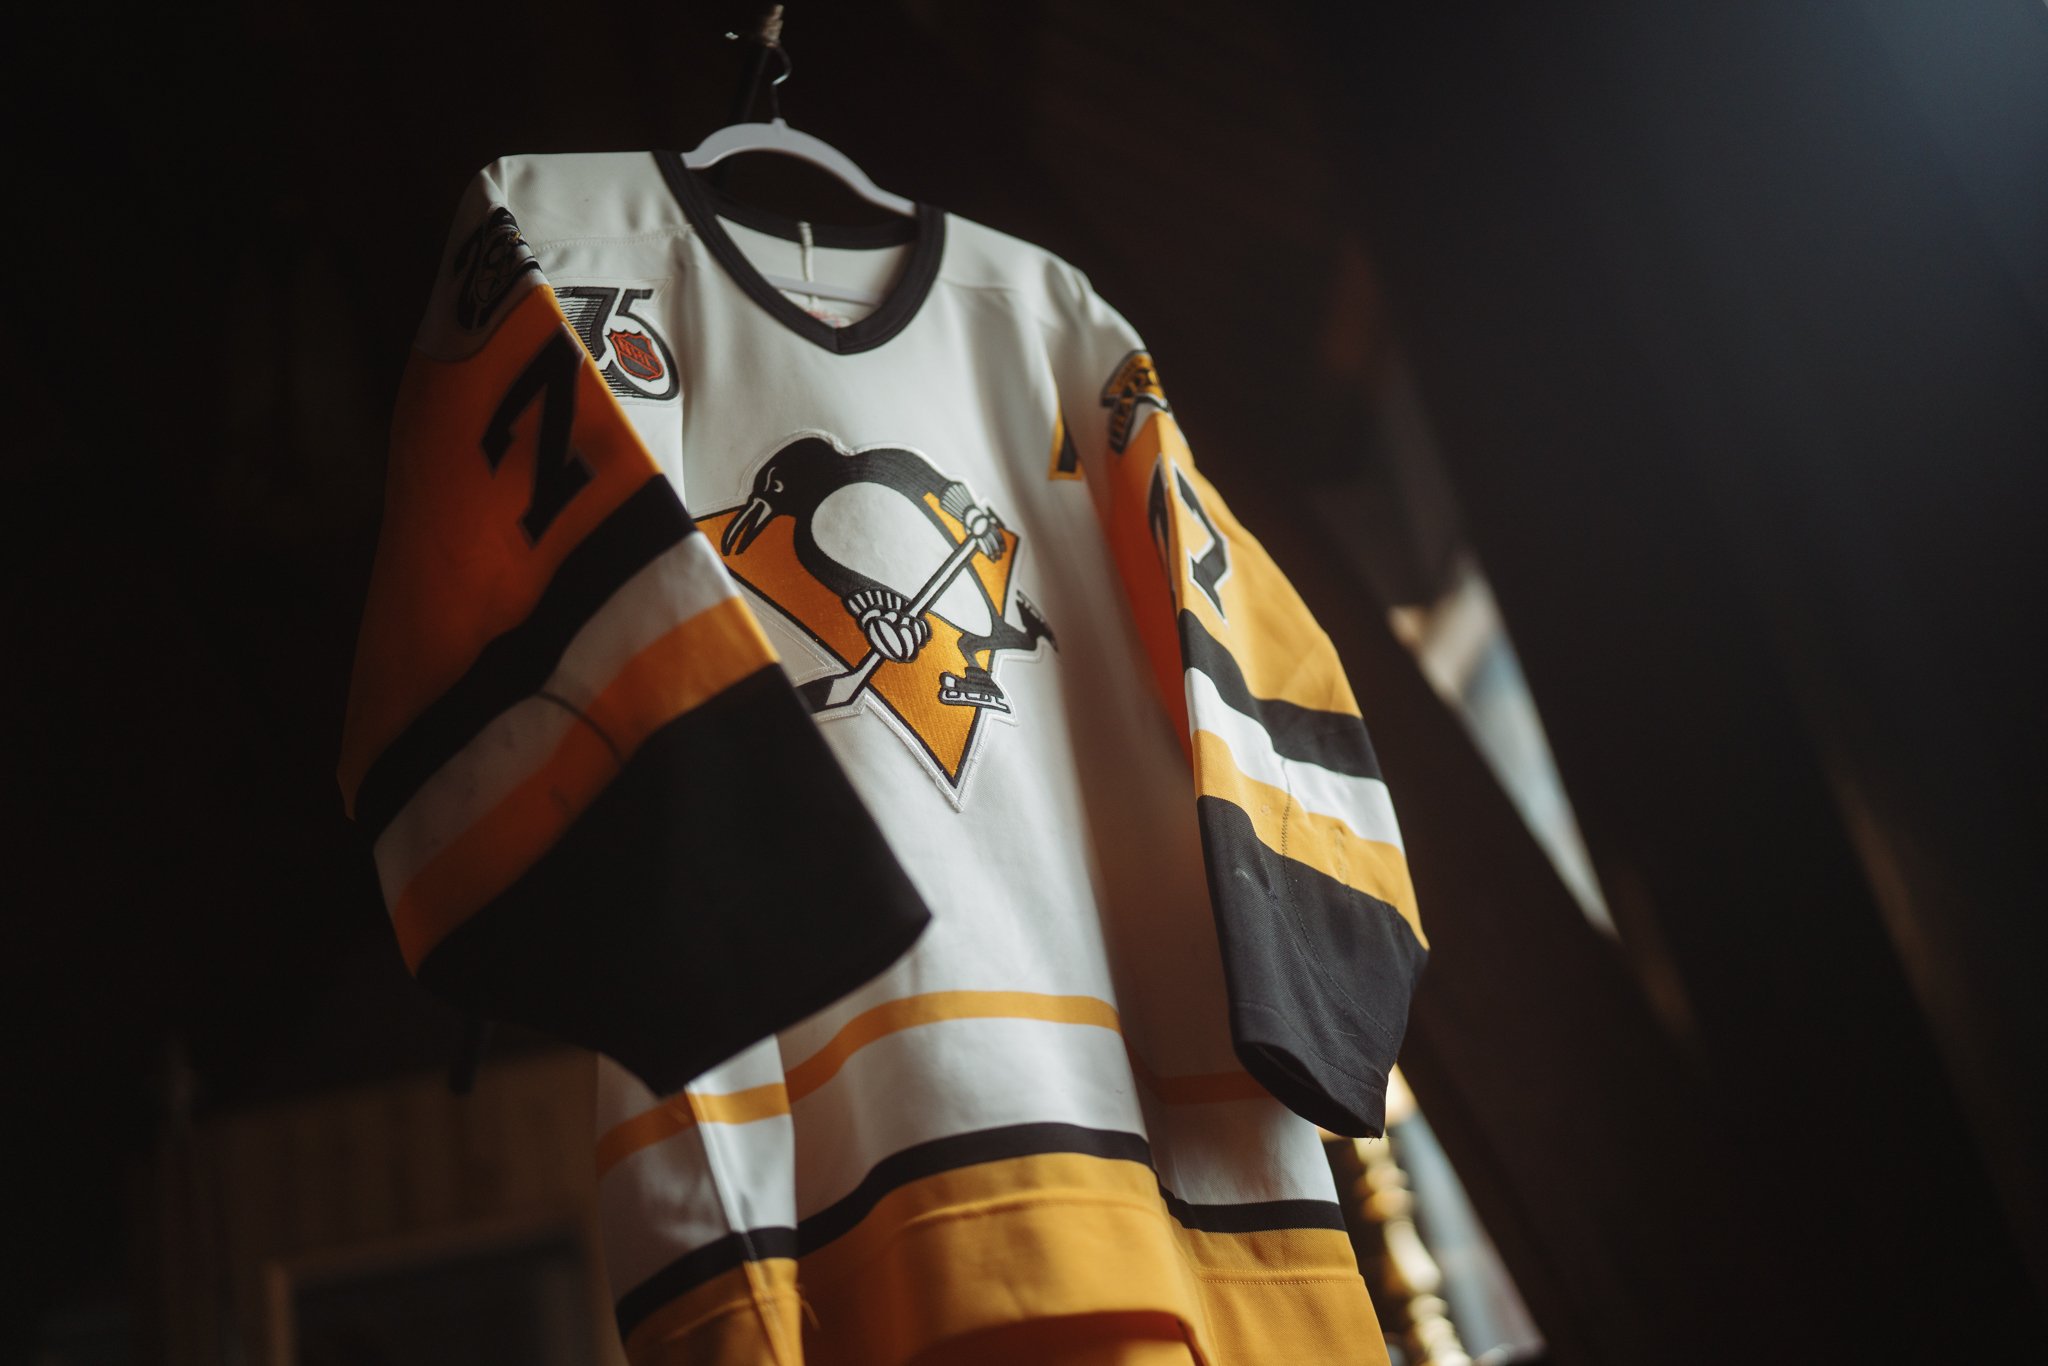 2007-08 Pittsburgh Penguins Game Worn Jerseys 